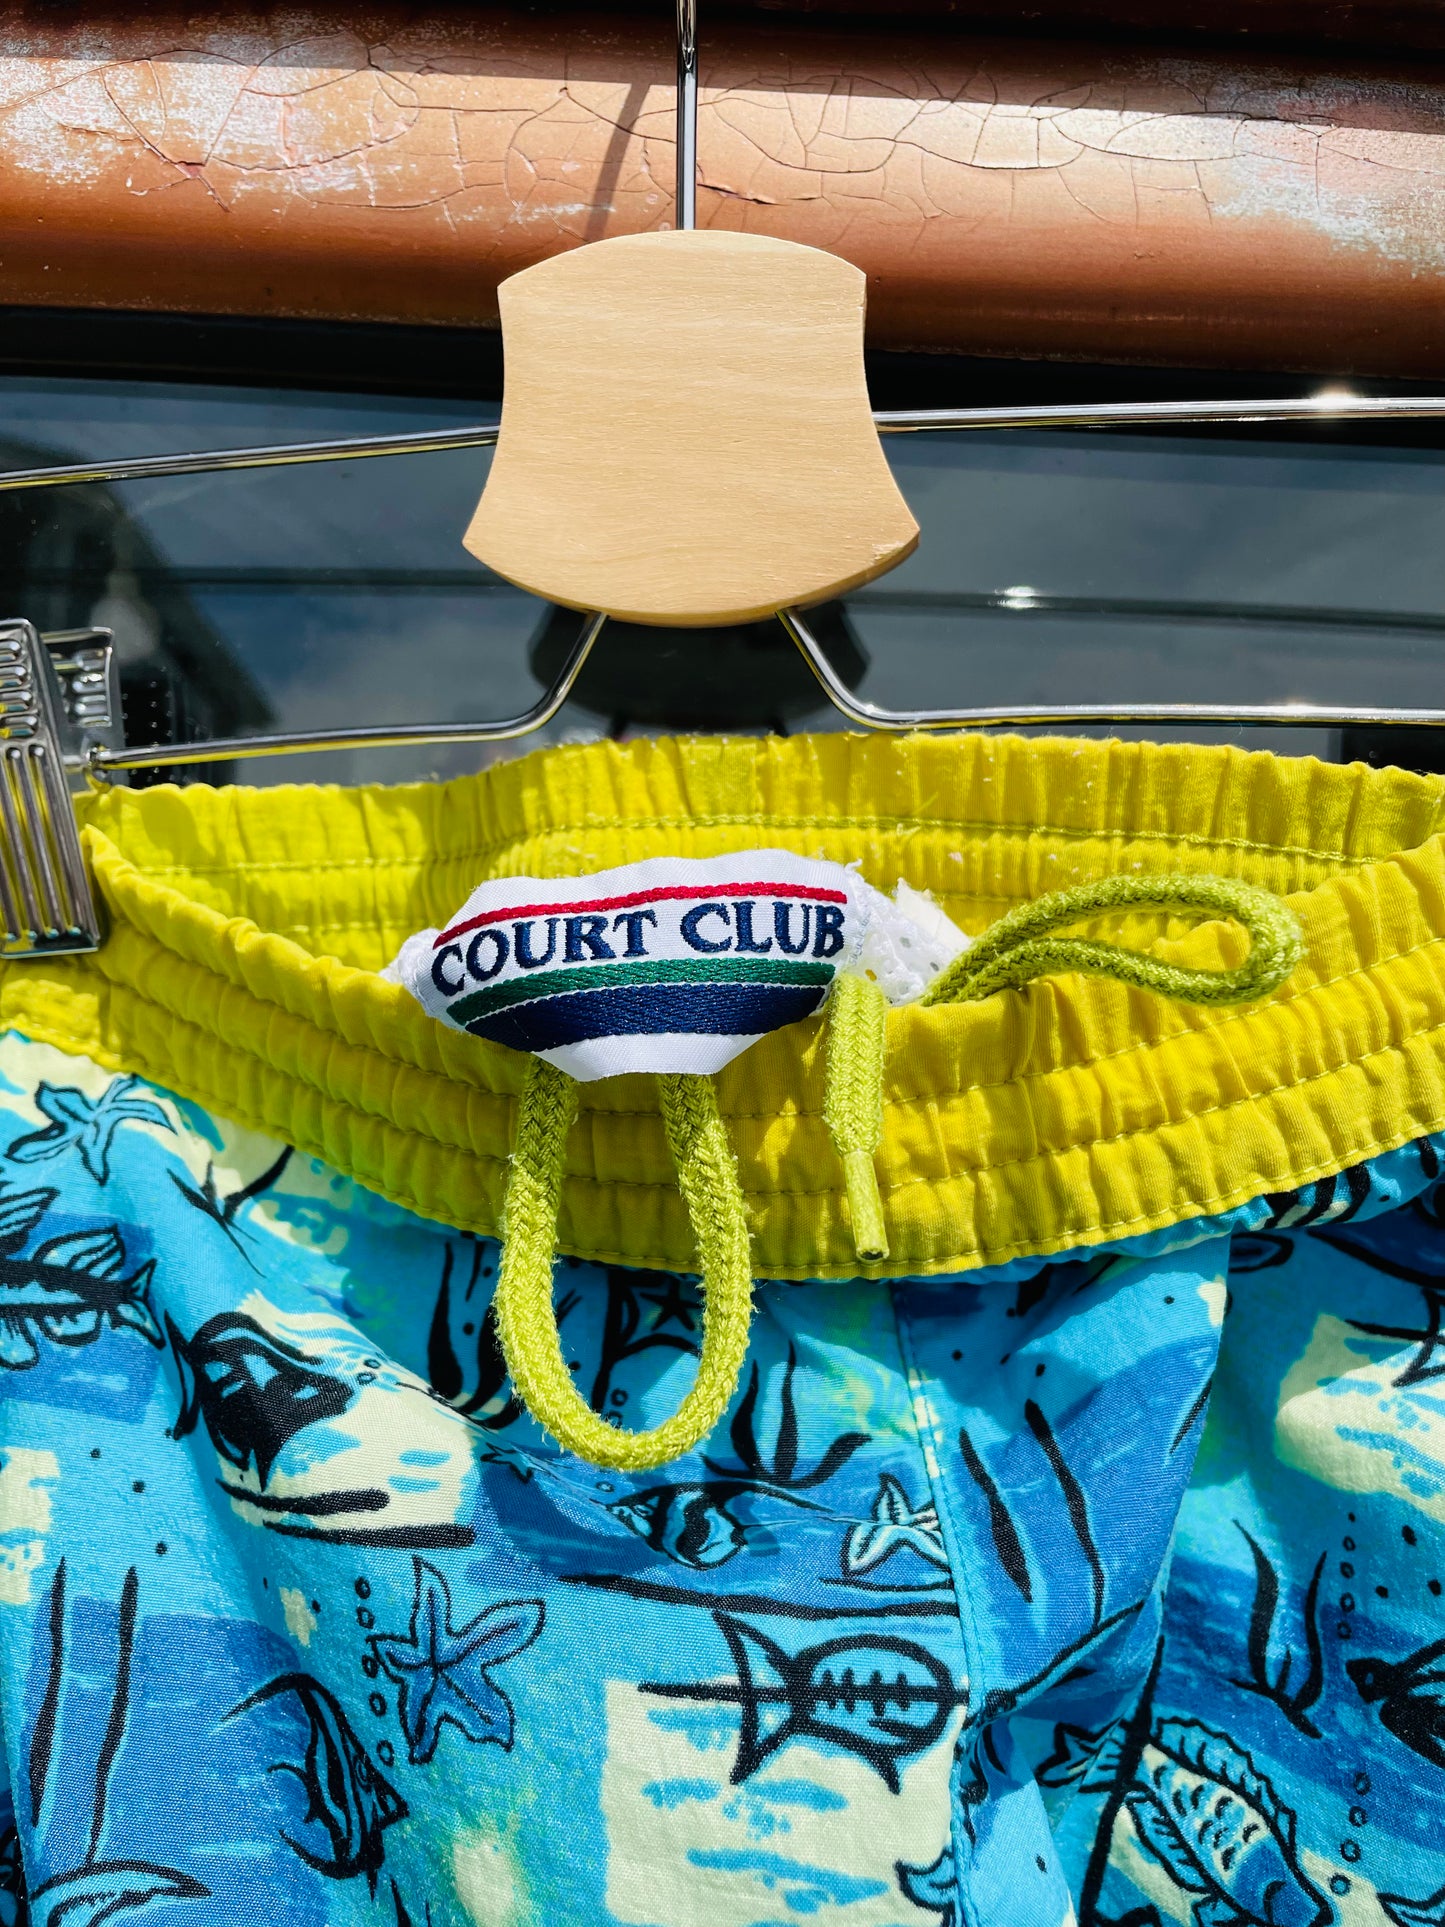 Vintage Court Club Swim Trunks / Shorts / Bathing Suit in Underwater Aquatic Design